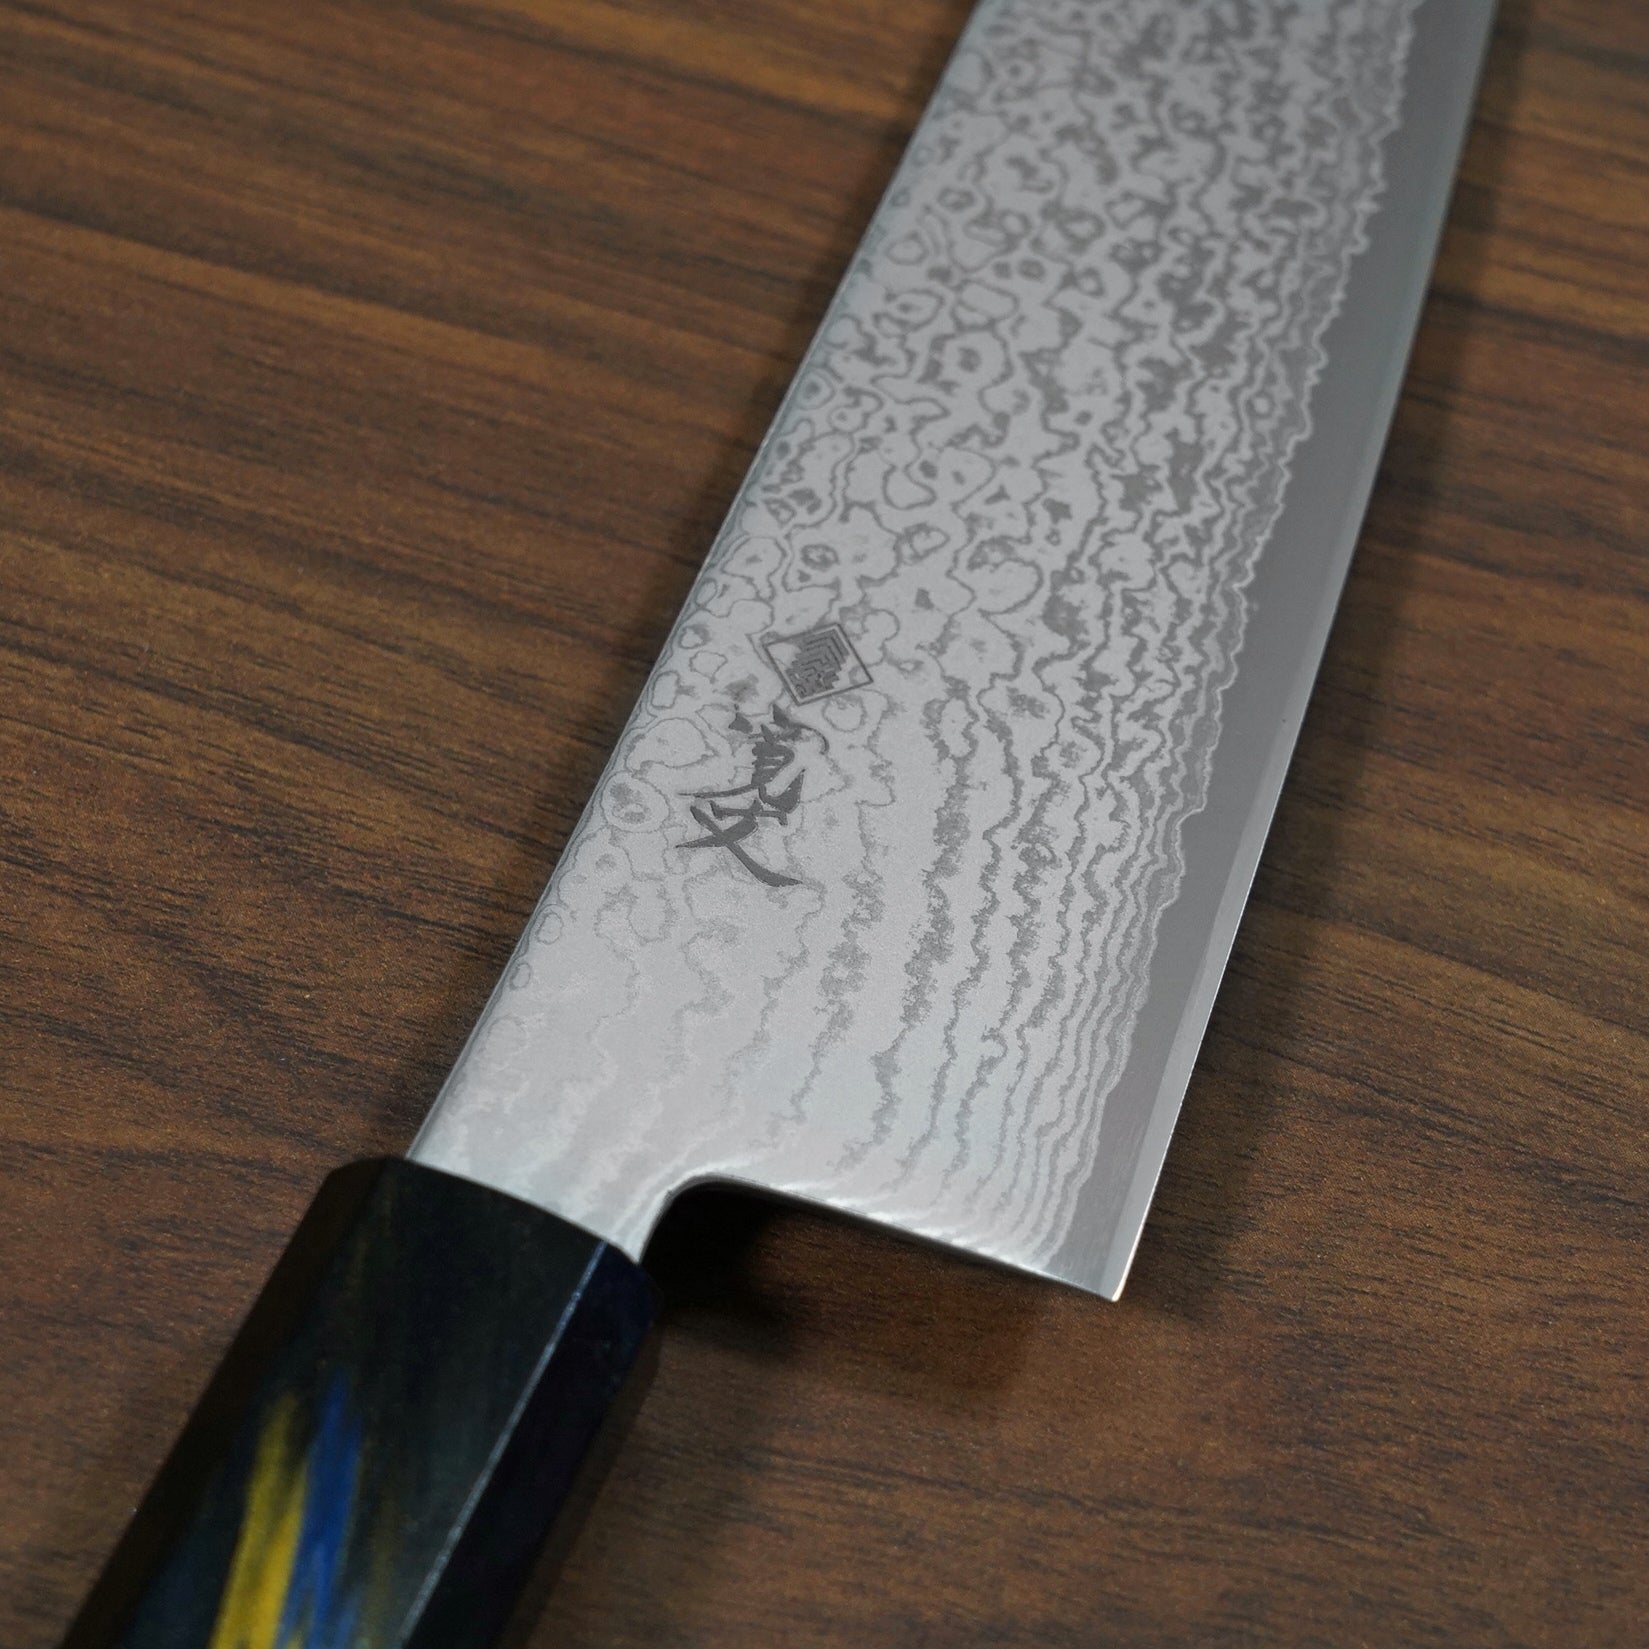 TURWHO Hand Forged Kitchen Knives Set Damascus Steel VG10 Japanese  Kiritsuke Chef Knife Slicing Sashimi Knife